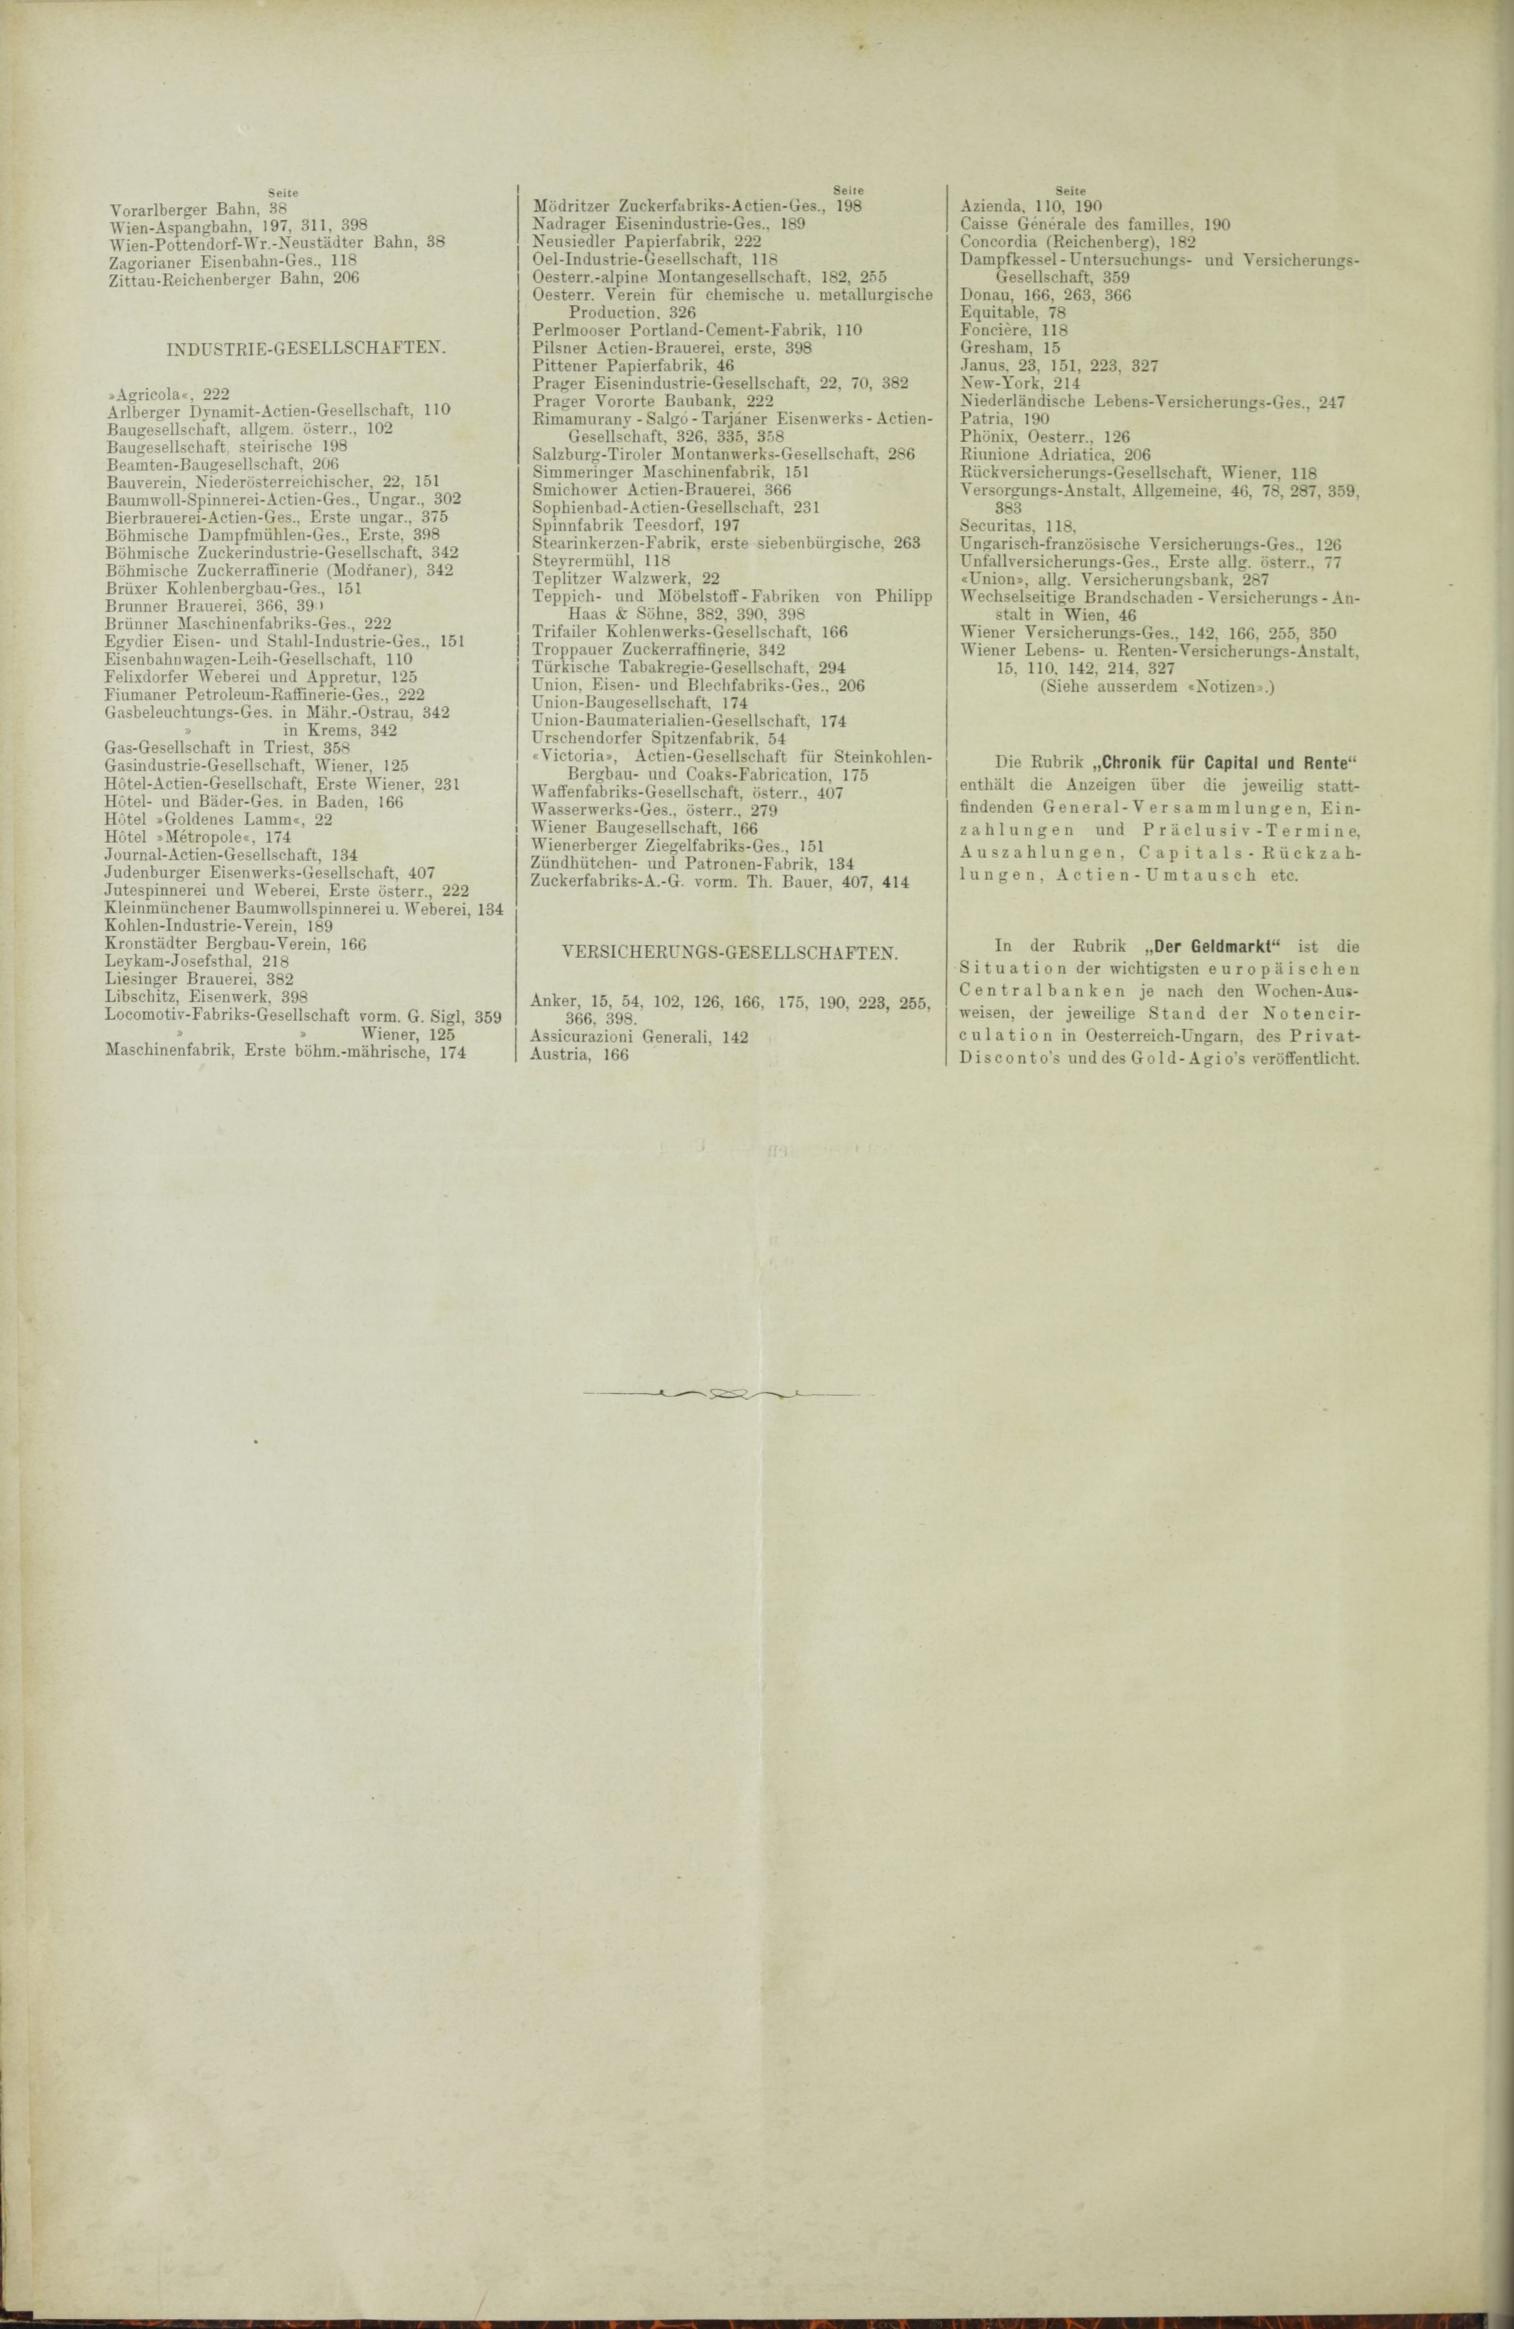 Der Tresor 25.02.1886 - Seite 12